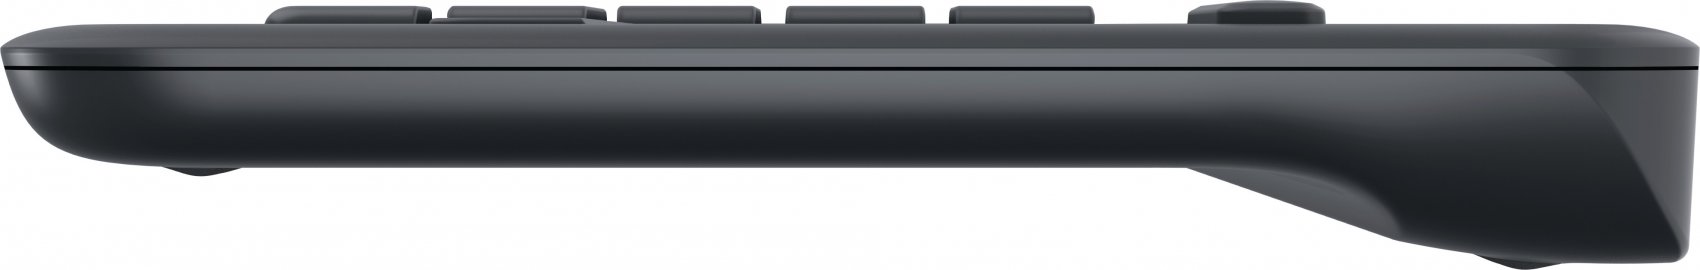 Teclado Logitech Wireless con Touchpad Black K400 (150237)